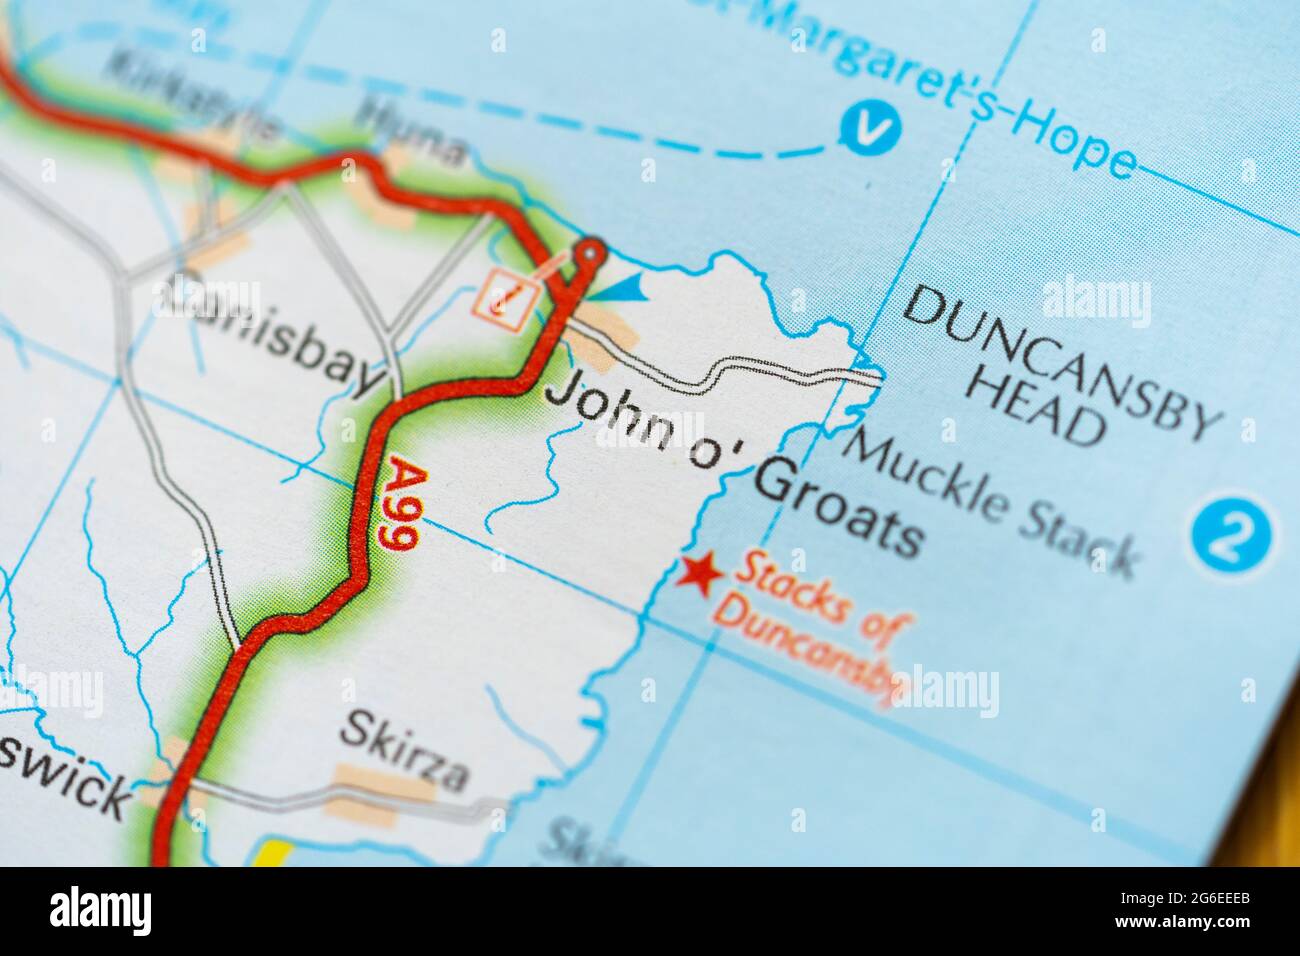 Un macro cierre de una página en un atlas impreso de mapa de carreteras que muestra a John o'Groats, famoso por ser el pueblo más poblado del norte de Escocia Foto de stock